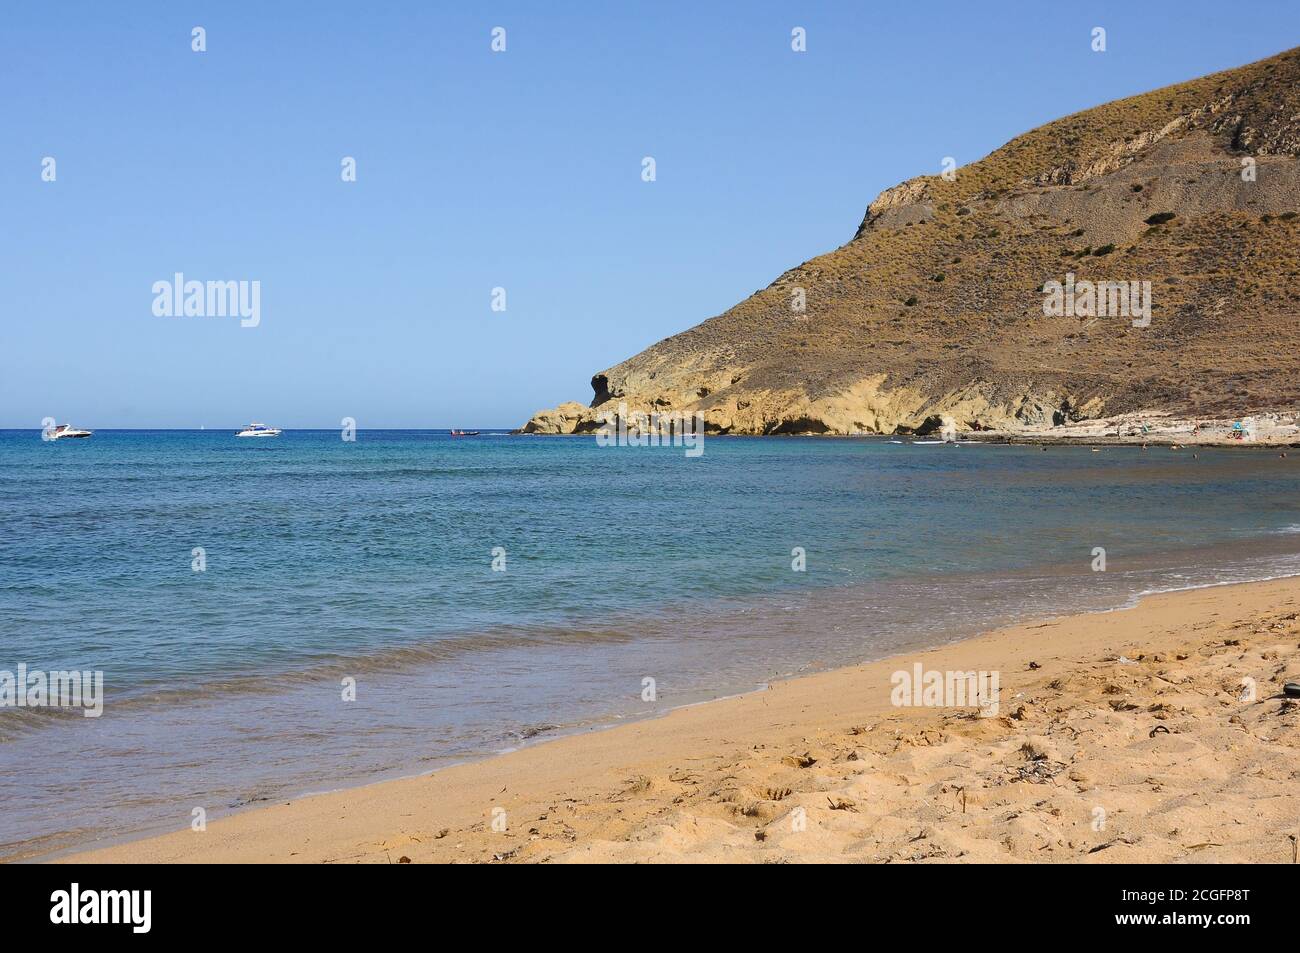 El Playazo de Rodalquilar, beach in Cabo de Gata Natural Park, Almeria, Spain Stock Photo